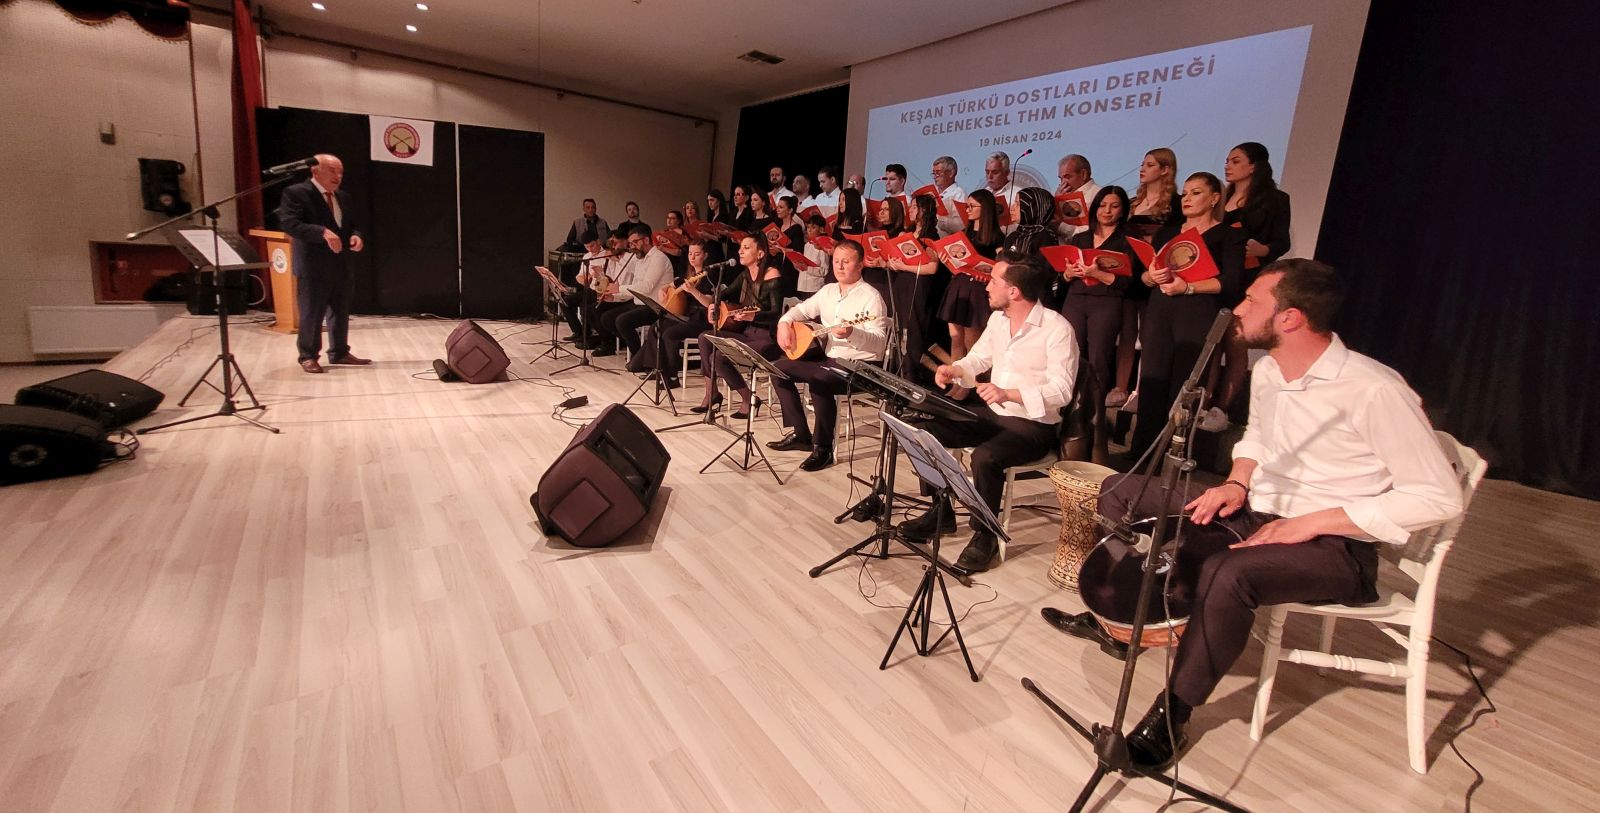 Keşan Türkü Dostları Derneği’nin THM konseri beğeniyle izlendi